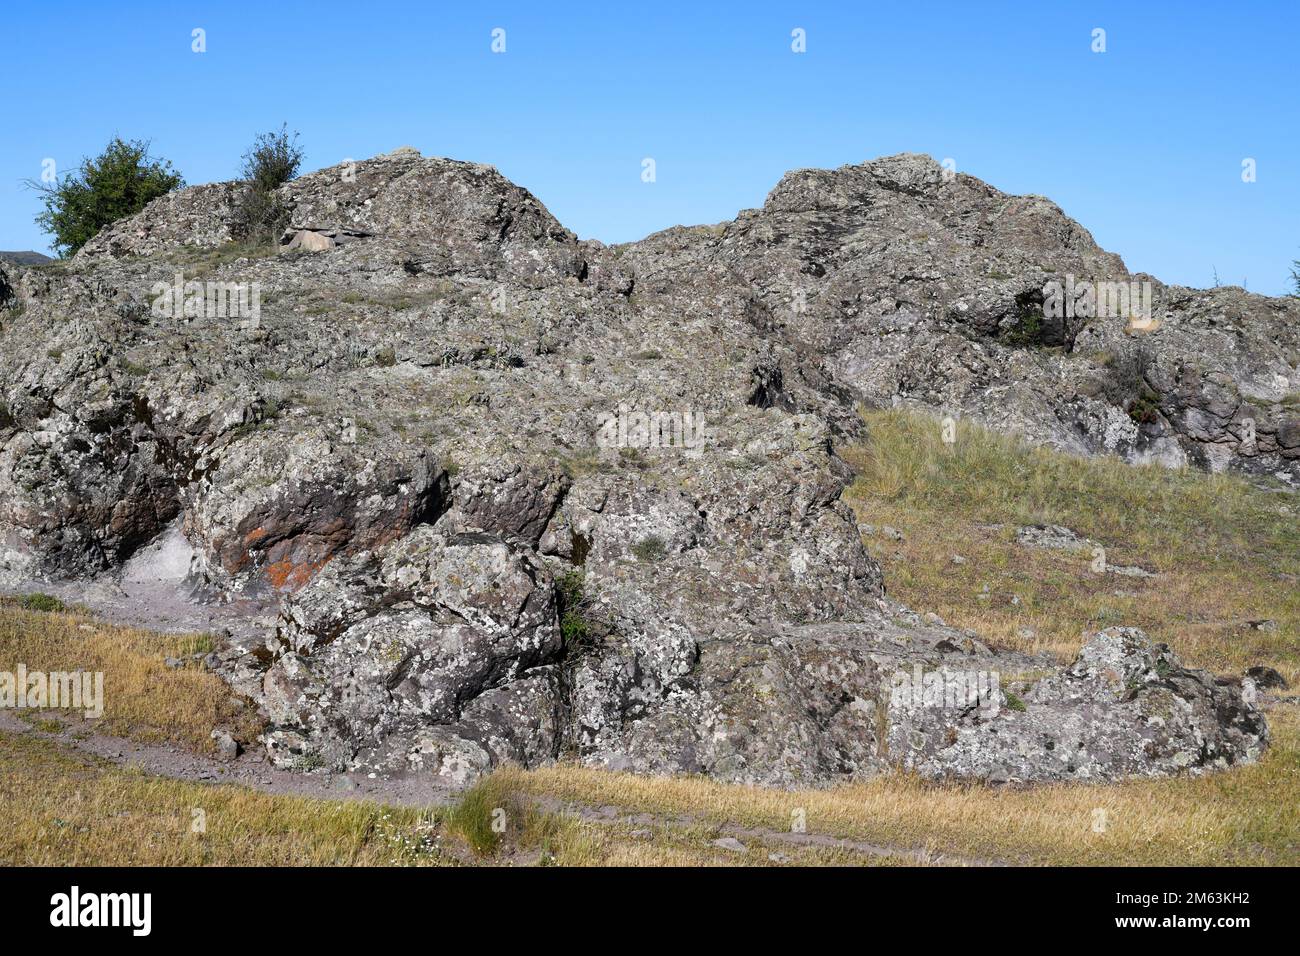 Volcanic outcrop of andesita from Permian. Cerros volcanicos de la Miñosa, Guadalajara, castilla-La Mancha, Spain. Stock Photo